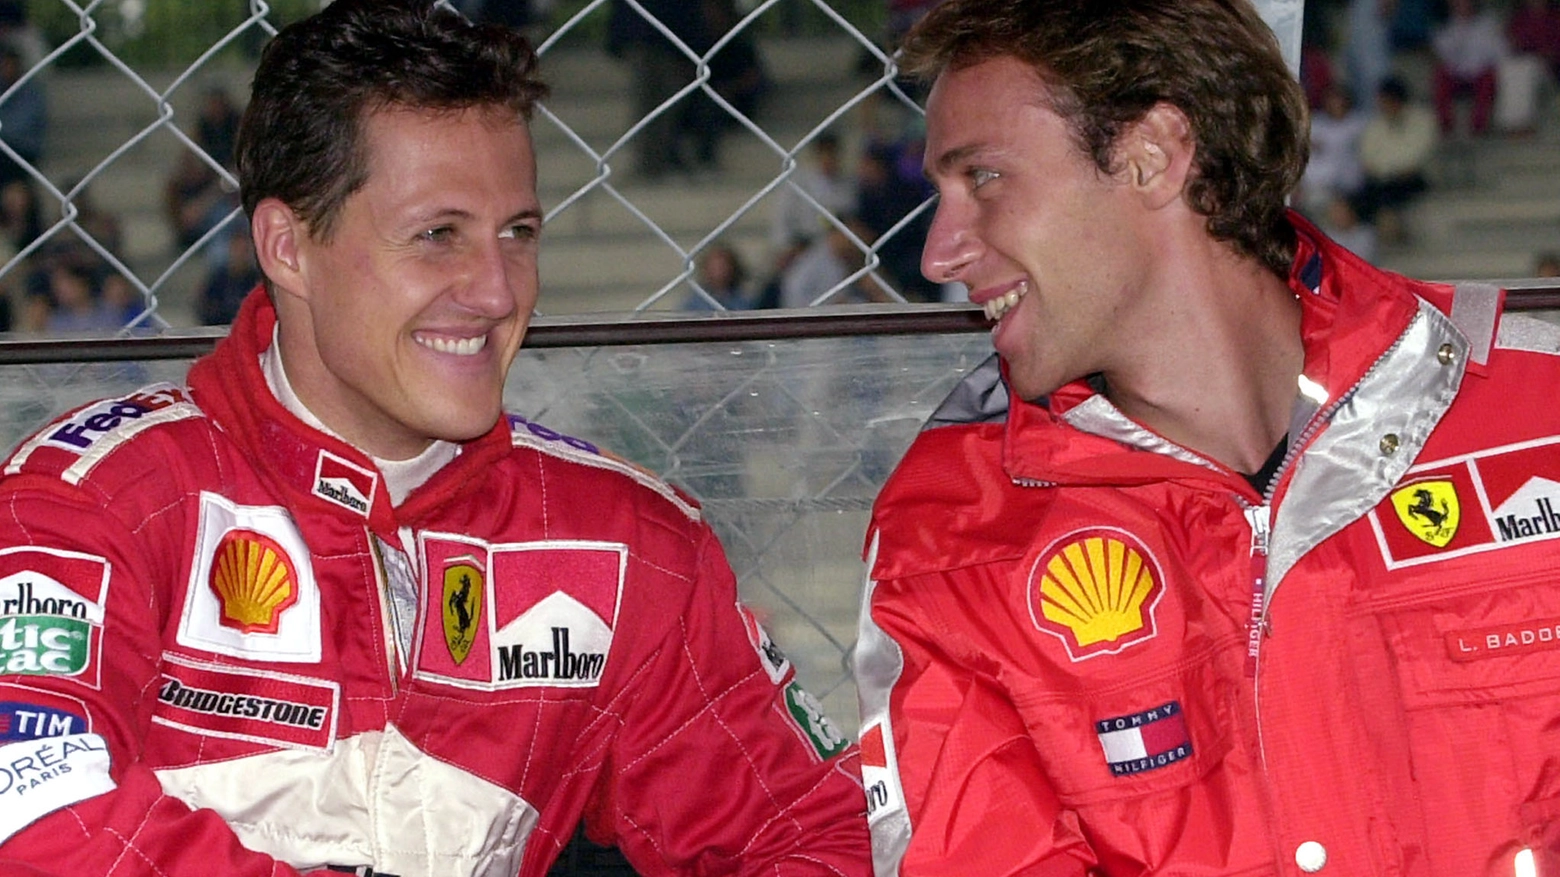 Michael Schumacher e Luca Badoer, un'amicizia nata in pista (AP PHOTO / ANTONIO CALANNI)